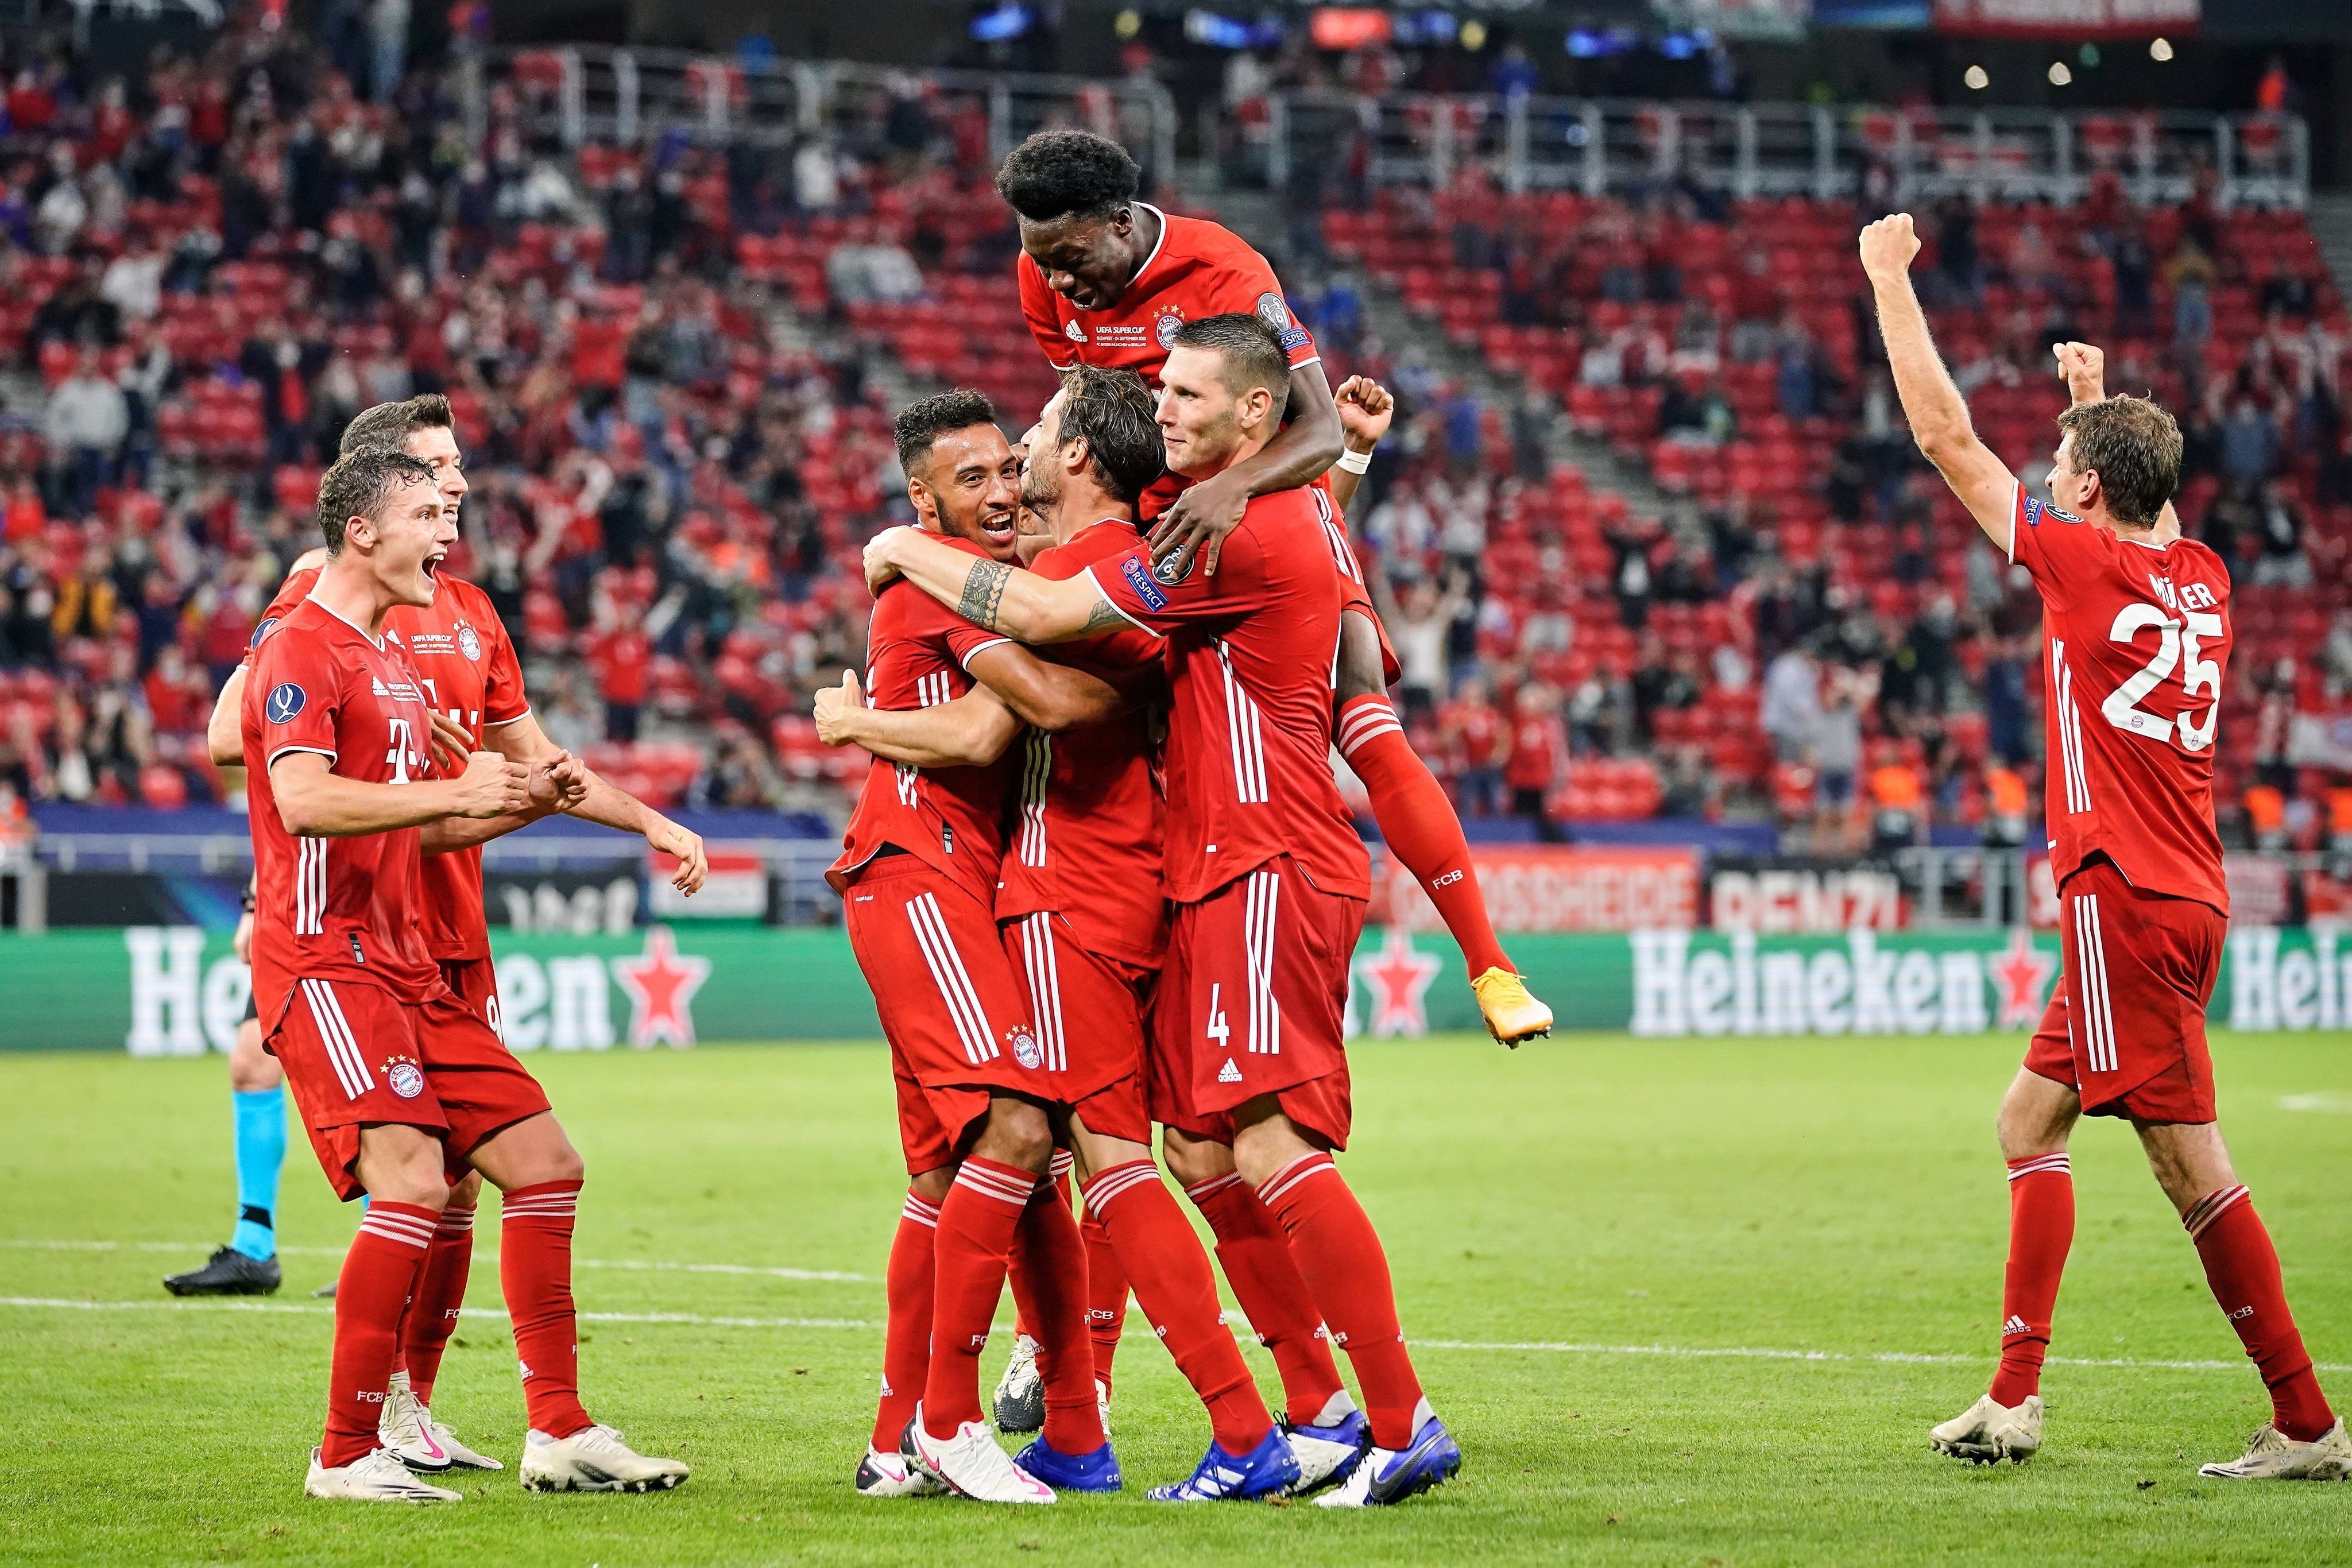 Бавария — Боруссия М прогноз 8 мая 2021: ставки и коэффициенты на матч Бундеслиги